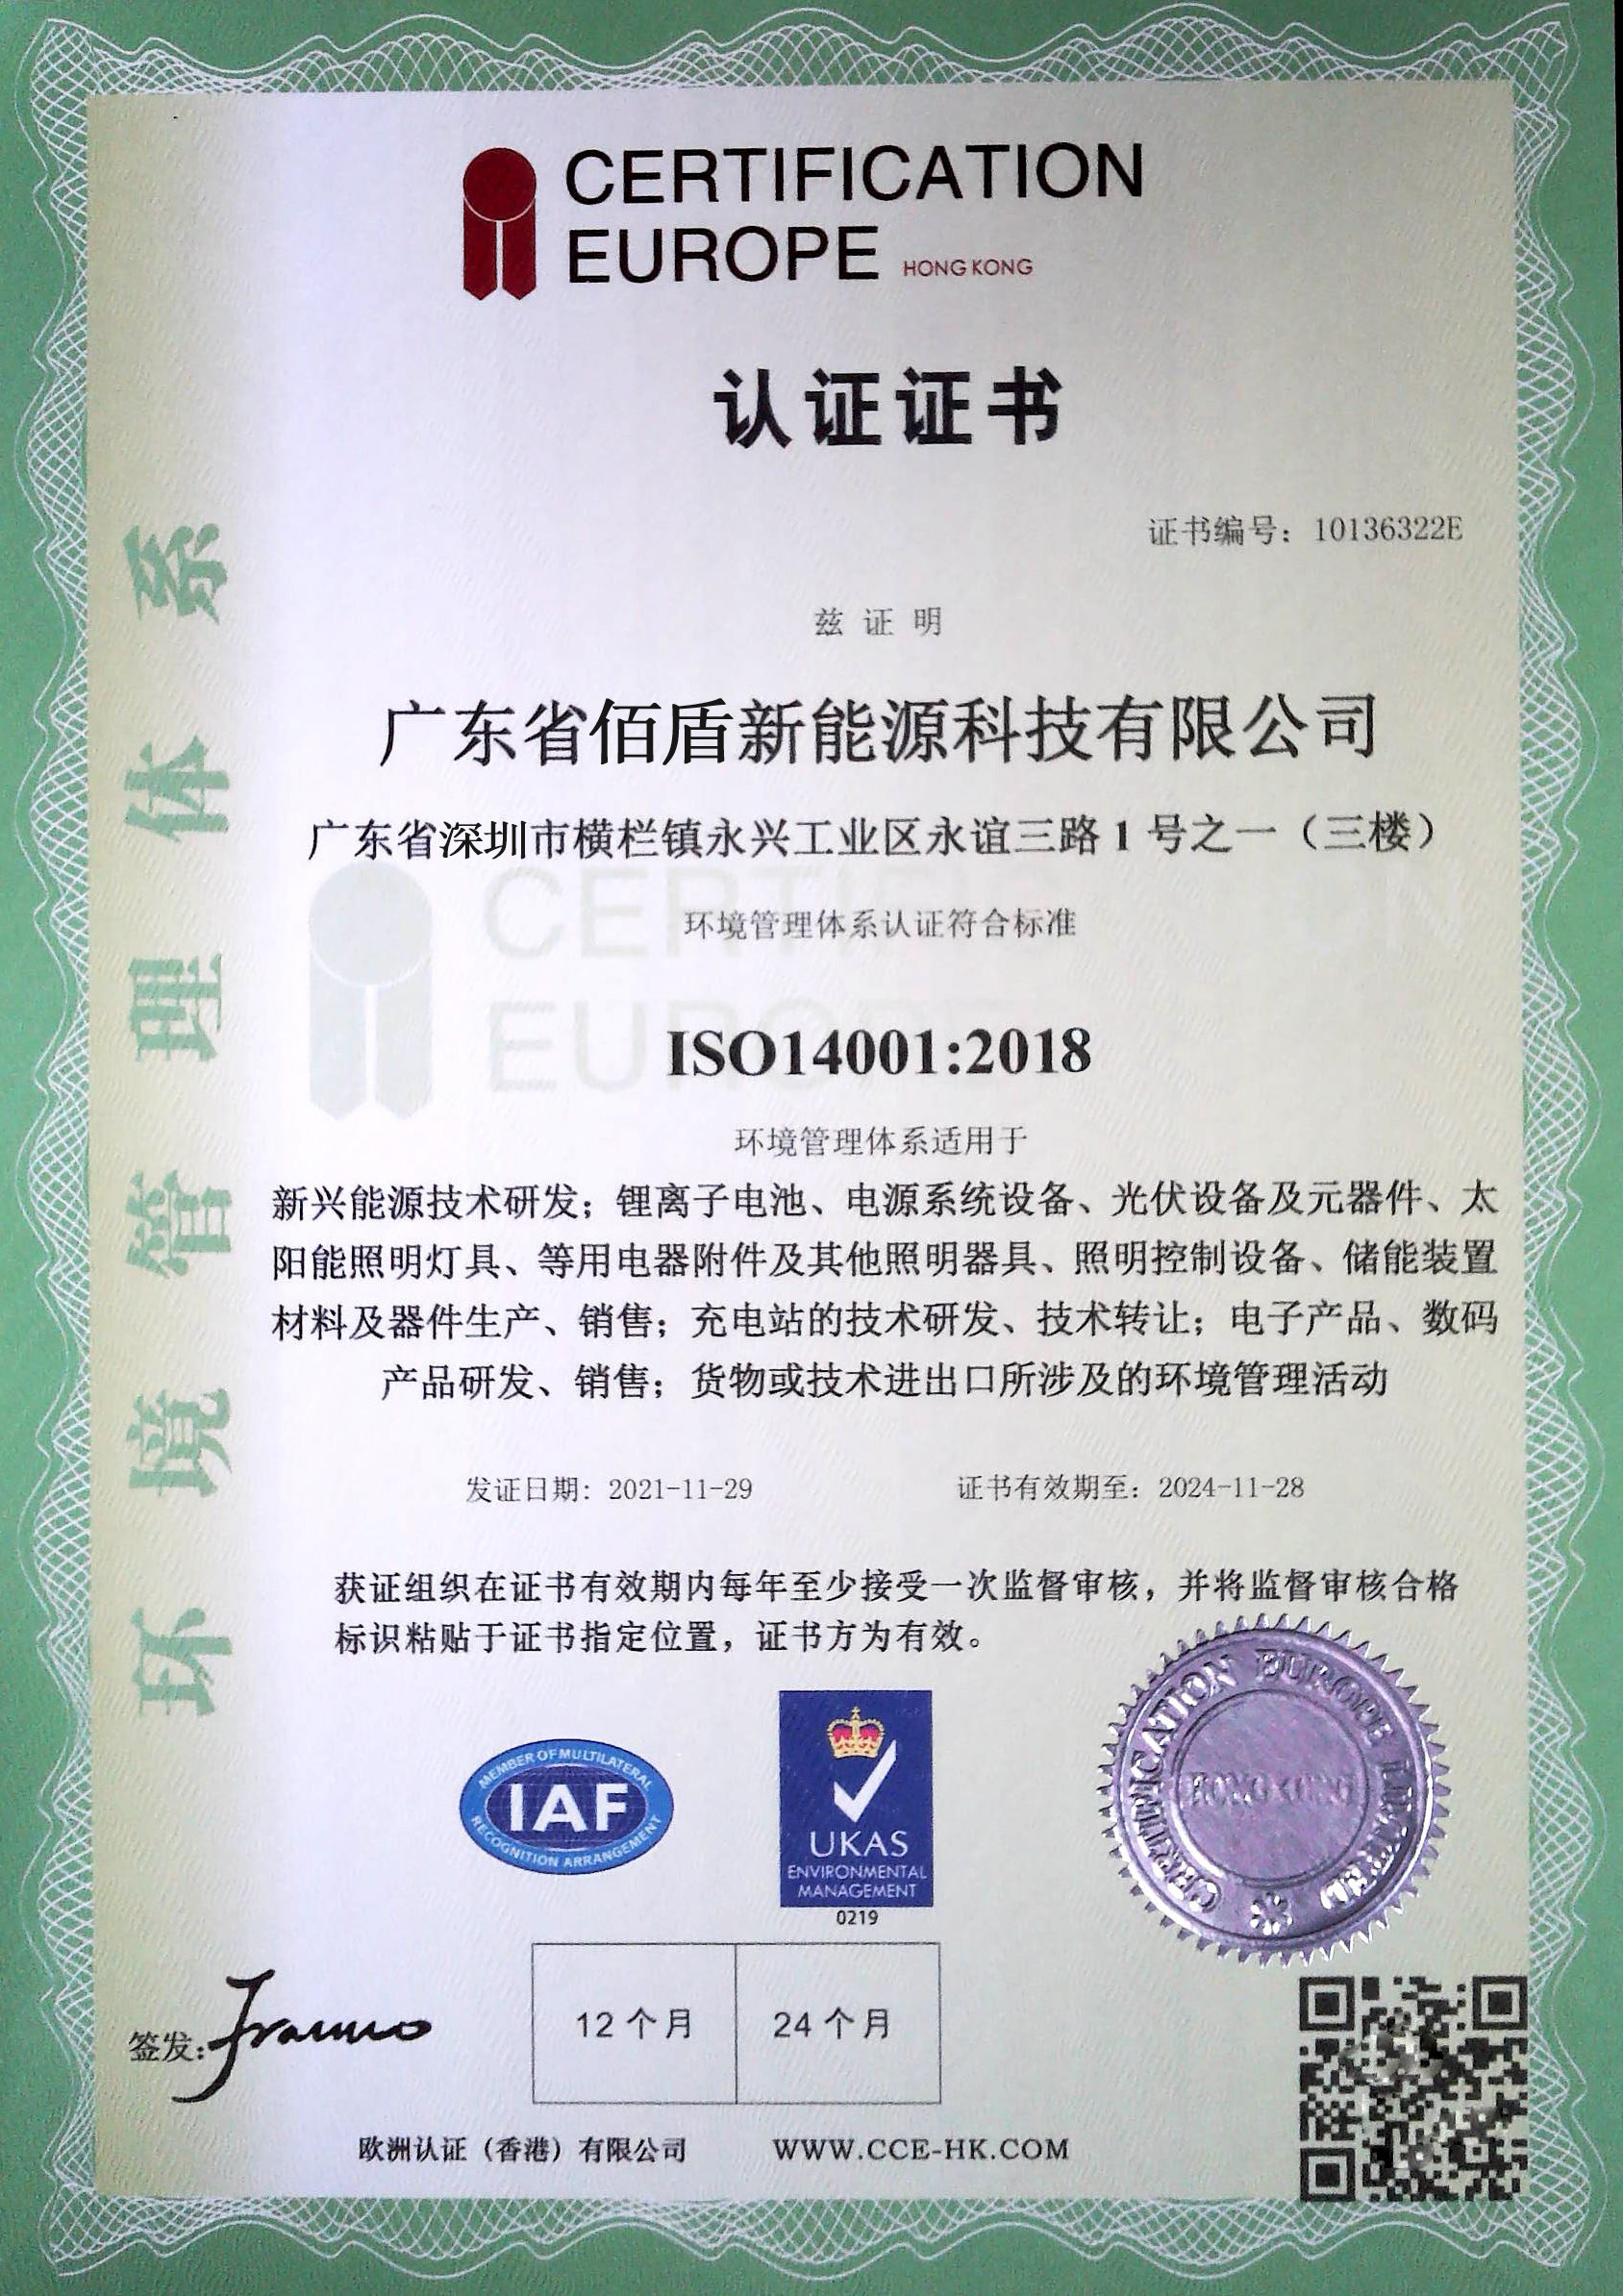 Shenzhen Baidun New Energy Technology Co., Ltd. Certifications